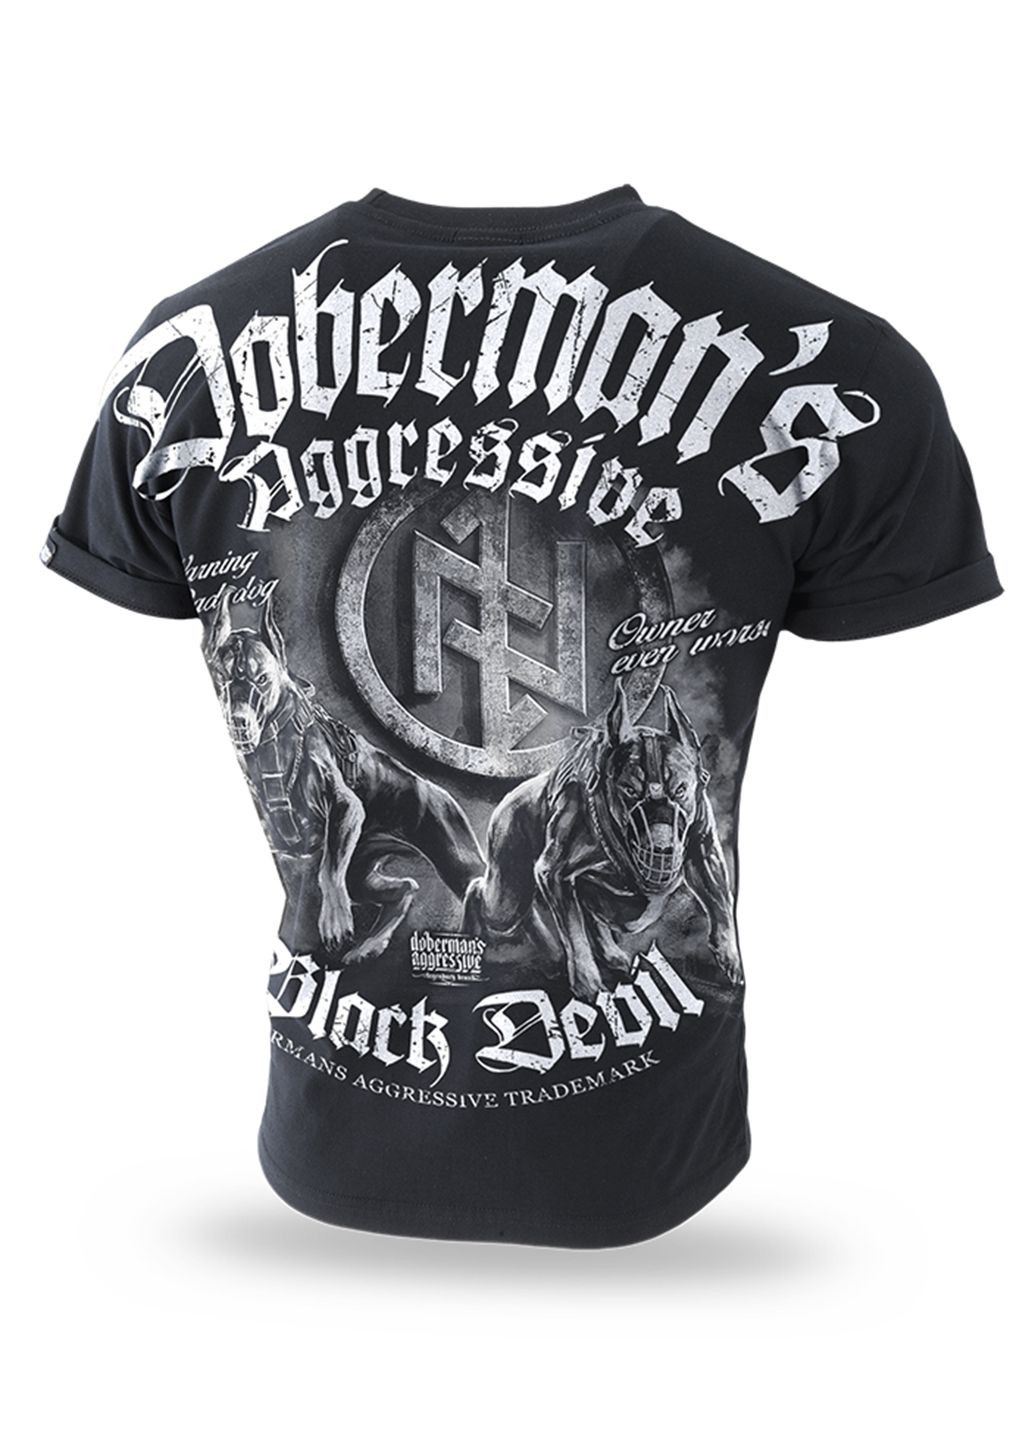 Чорна футболка чоловіча Dobermans Aggressive